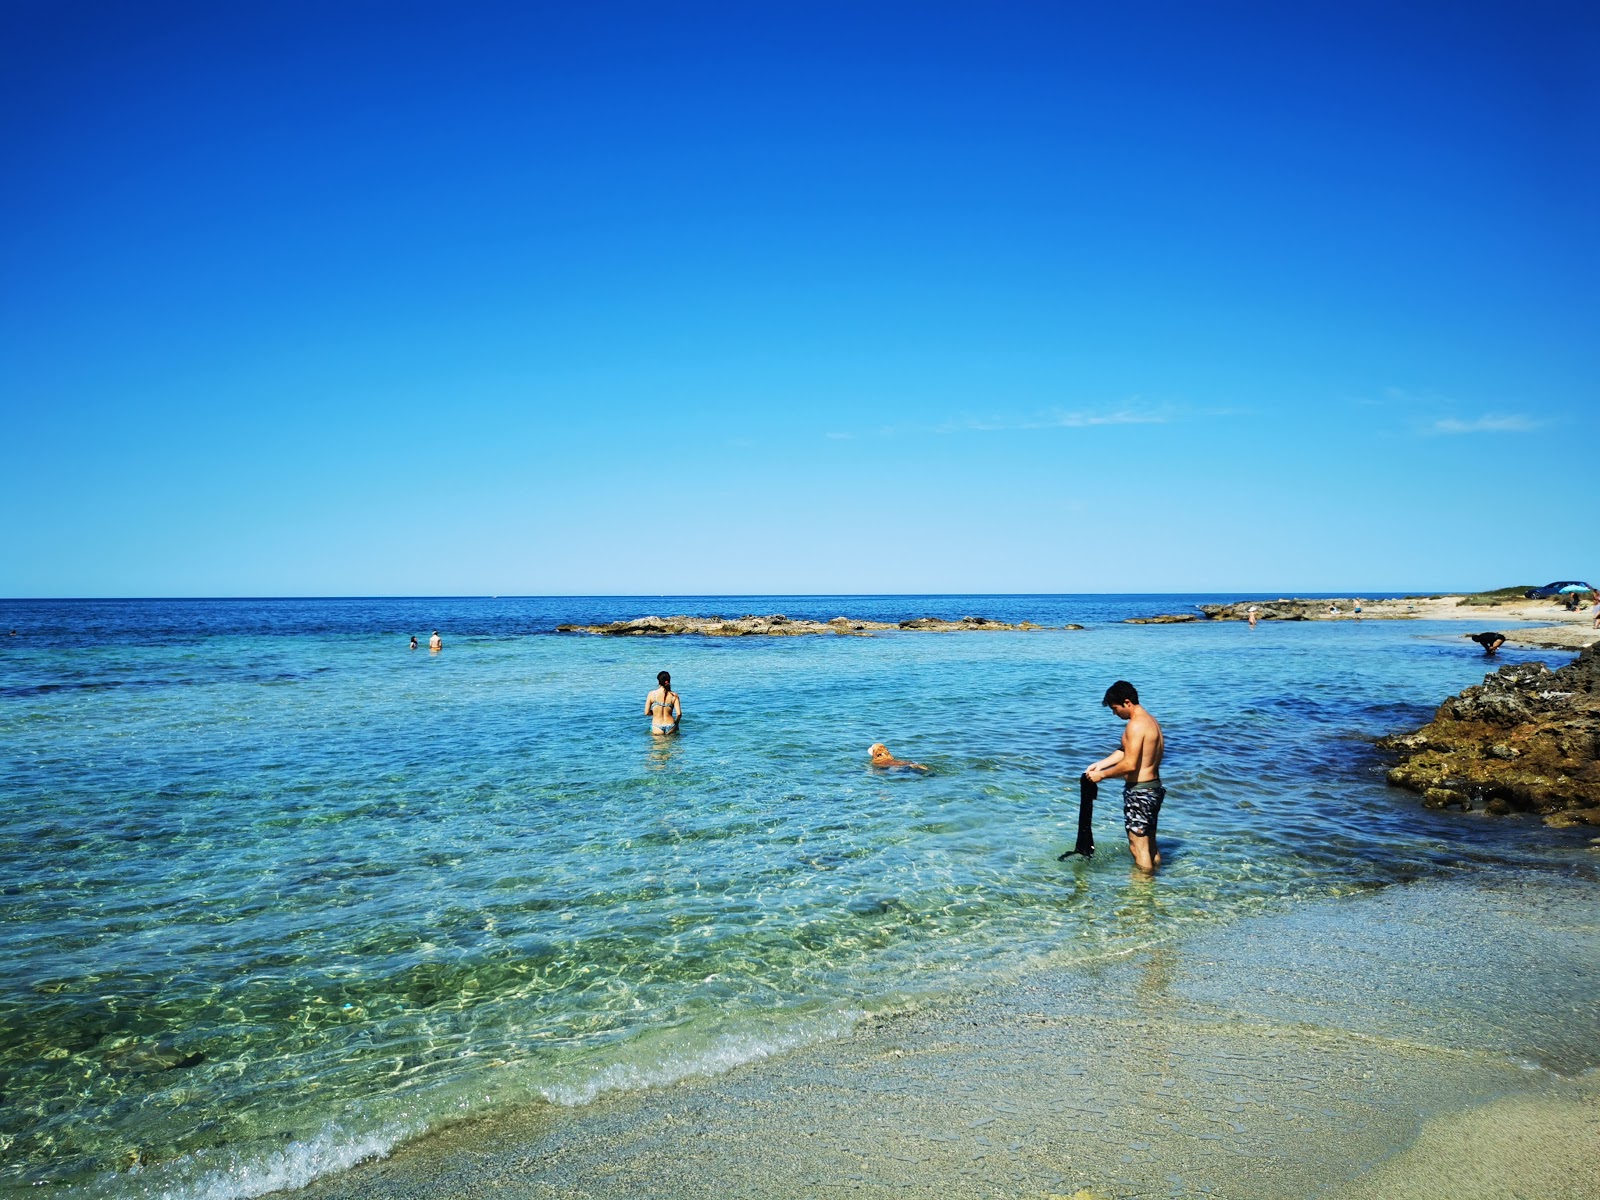 Spiaggia calette di salve'in fotoğrafı kısmen temiz temizlik seviyesi ile